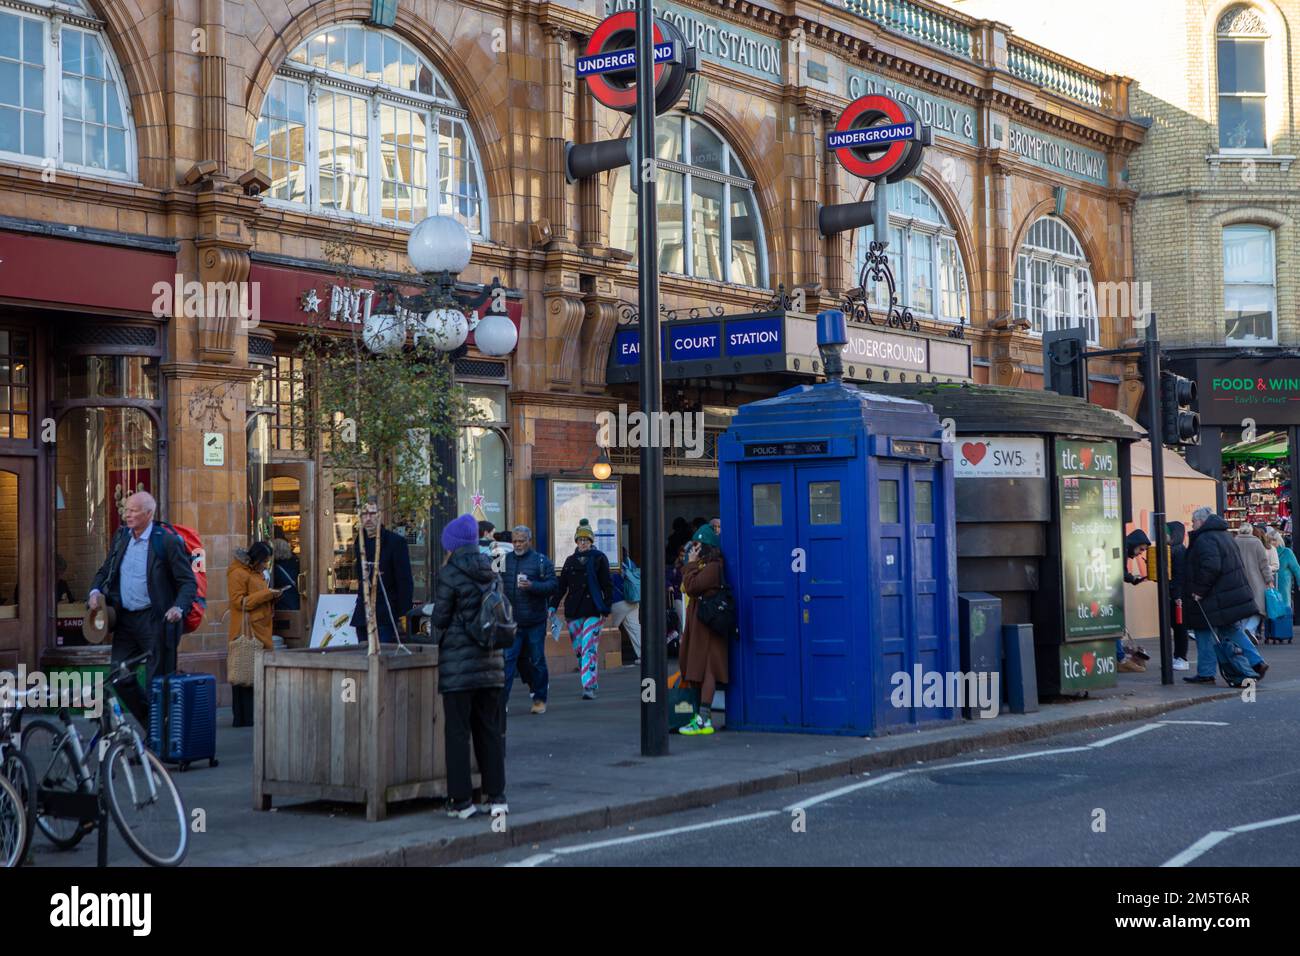 Londres, Angleterre – Une boîte téléphonique bleue de police dans la rue de Londres, associée au programme de télévision de science-fiction Doctor Who comme son chamouf Banque D'Images